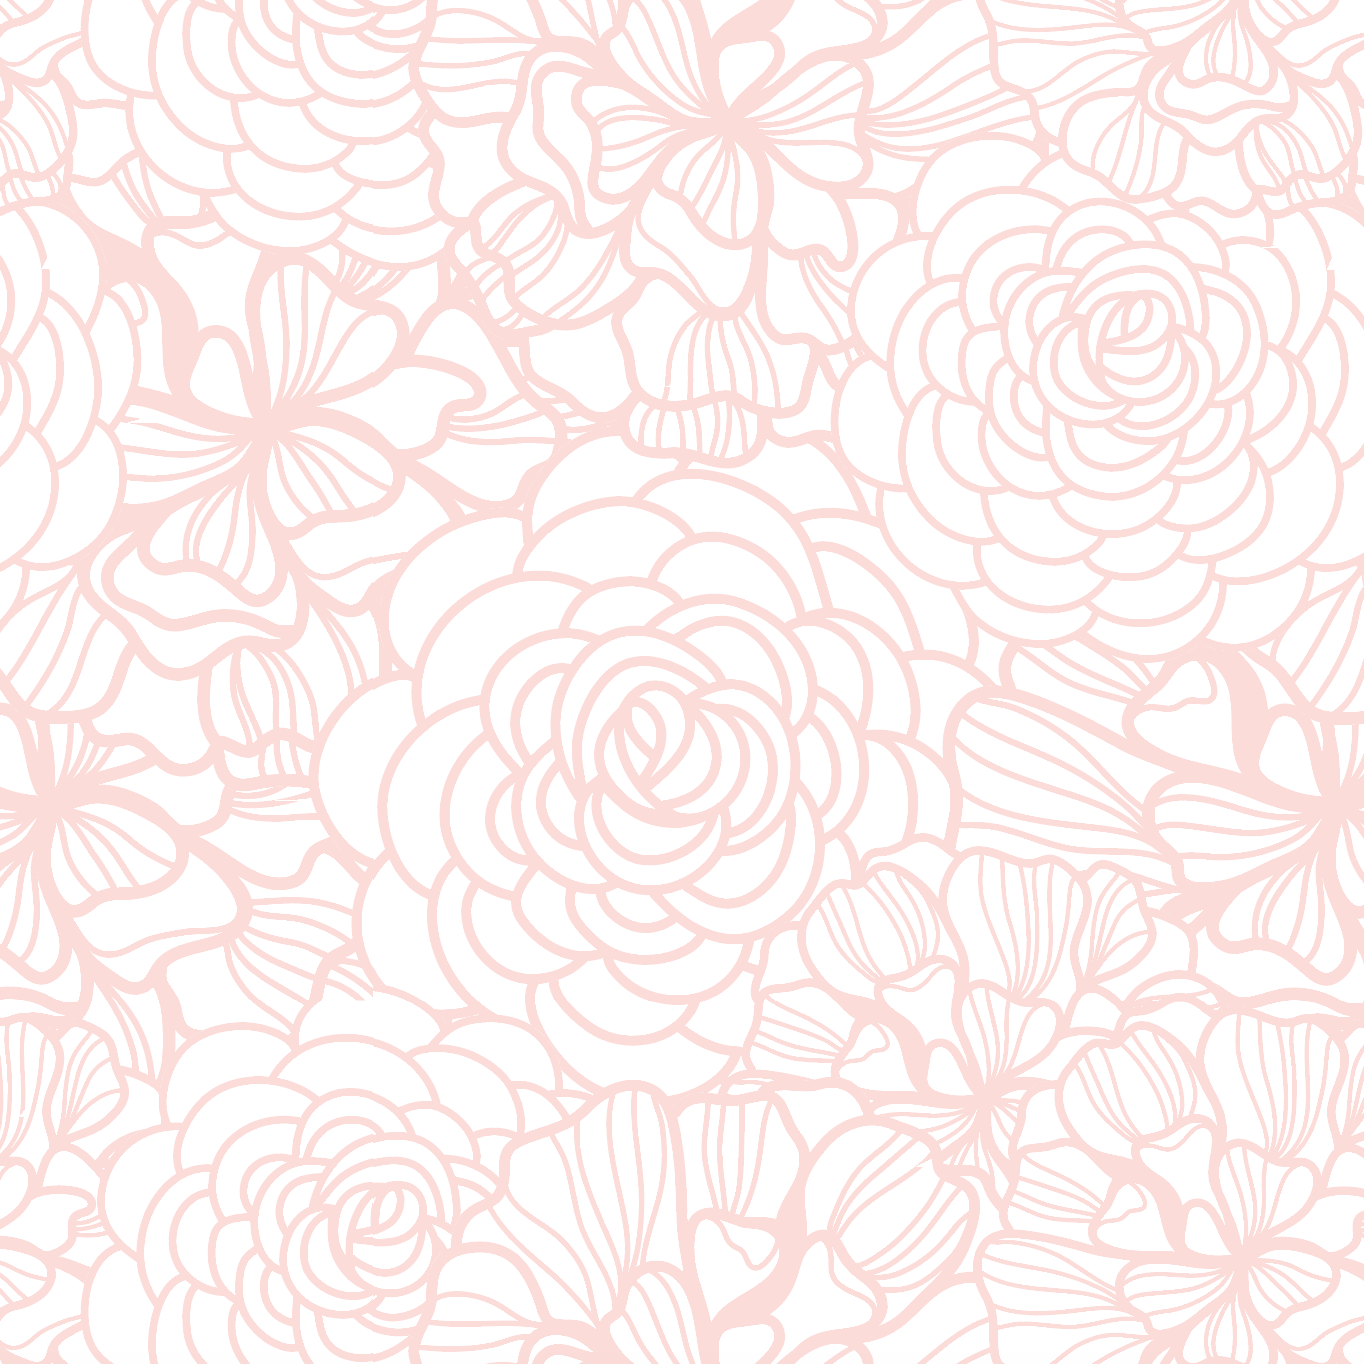 Flower wallpaper, flower wall paper, wall decoration, floral wallpaper, flower removable wallpaper, pink wallpaper, blush